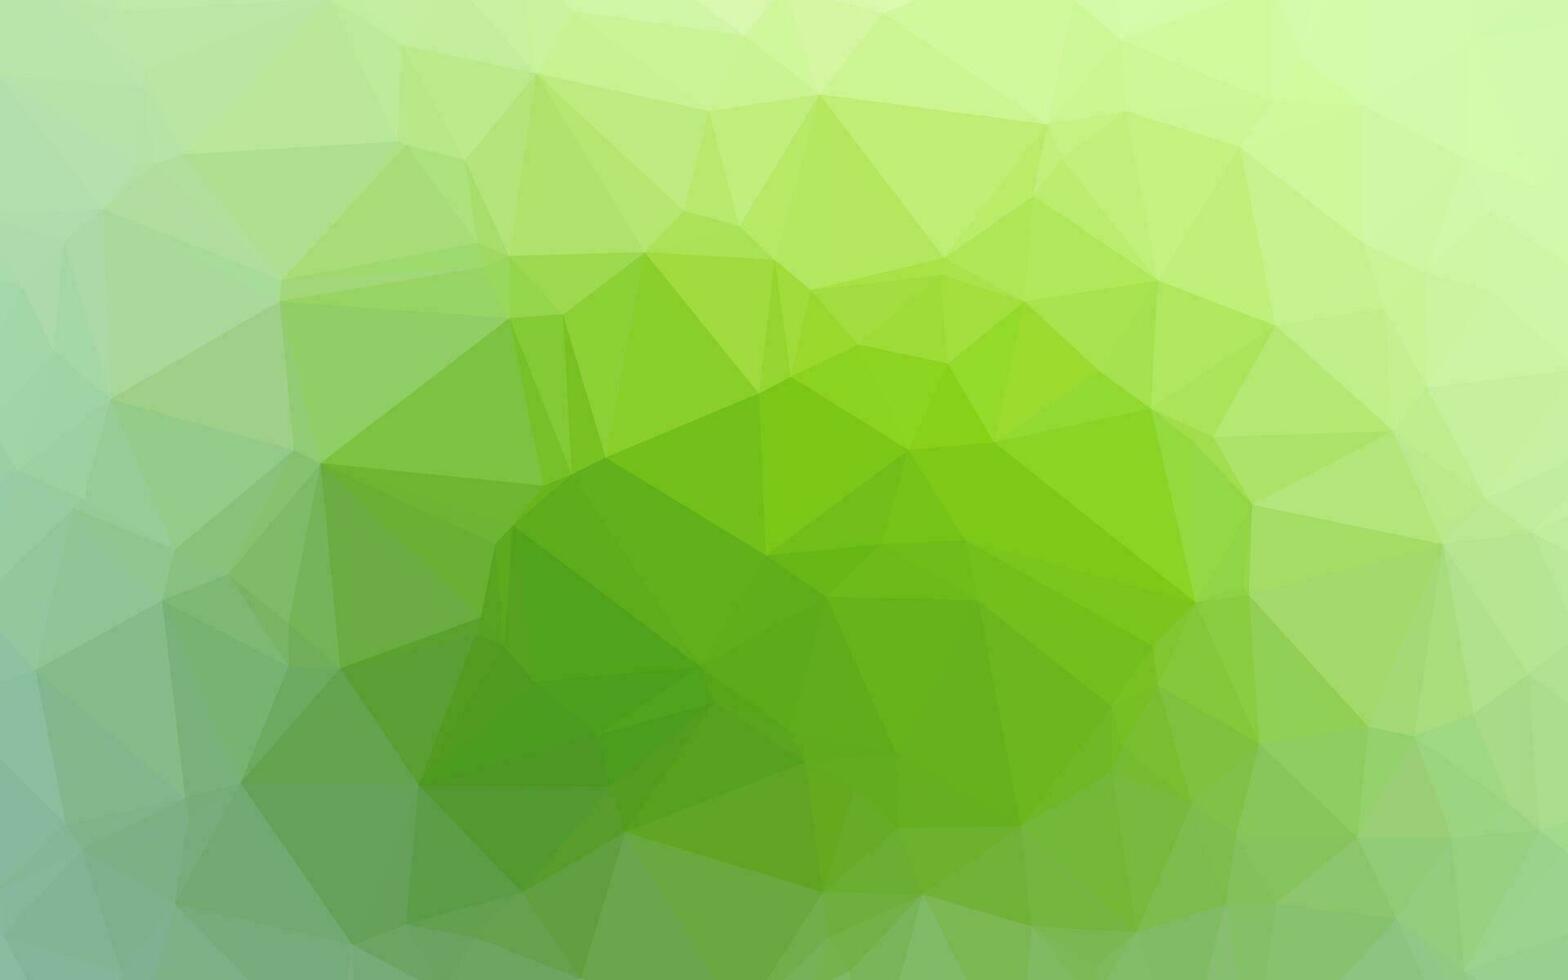 motif de mosaïque abstraite de vecteur vert clair.